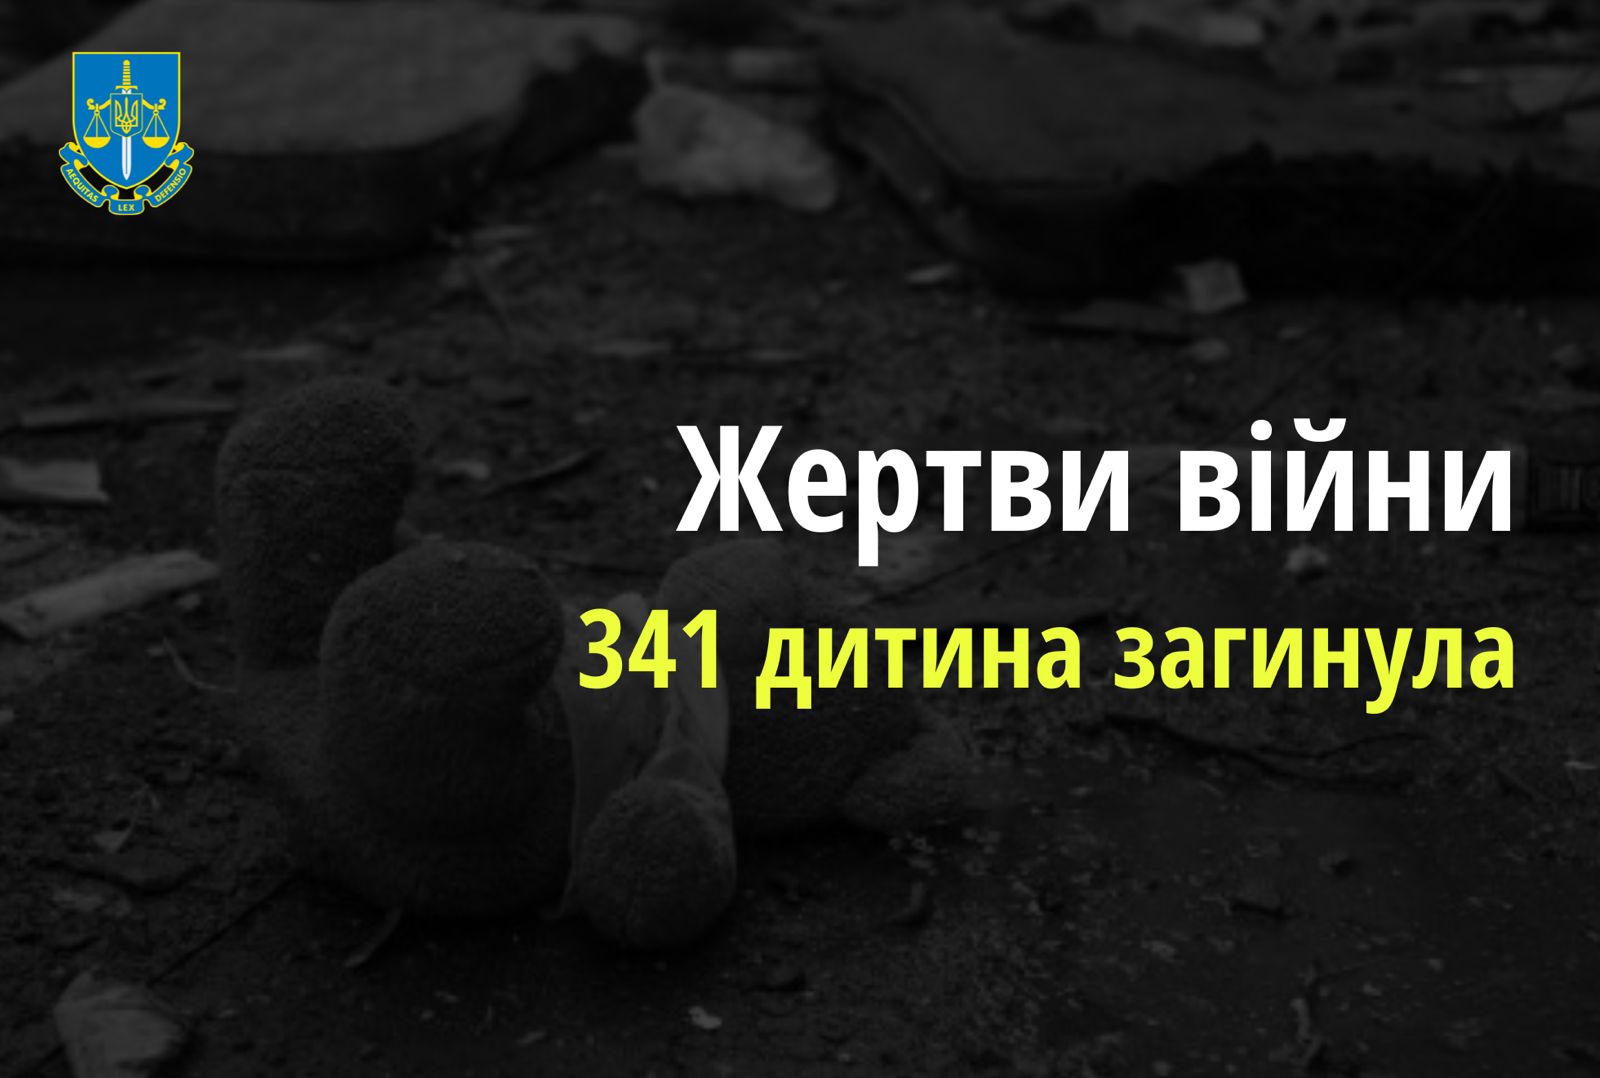 Ювенальні прокурори: внаслідок збройної агресії РФ в Україні загинула 341 дитина